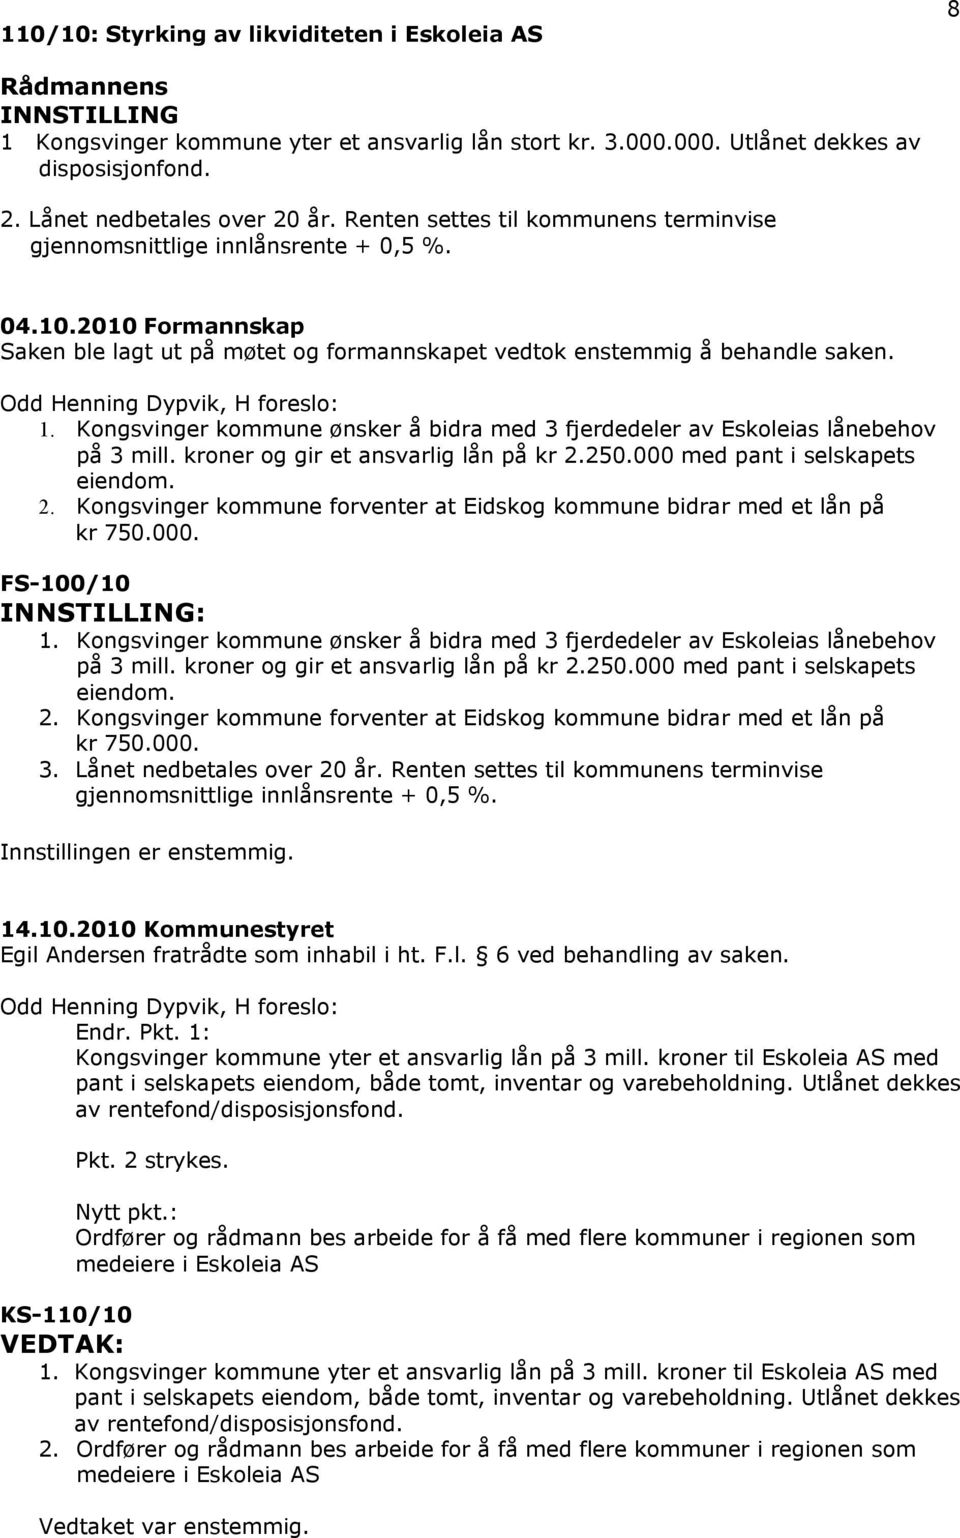 Odd Henning Dypvik, H foreslo: 1. Kongsvinger kommune ønsker å bidra med 3 fjerdedeler av Eskoleias lånebehov på 3 mill. kroner og gir et ansvarlig lån på kr 2.250.000 med pant i selskapets eiendom.